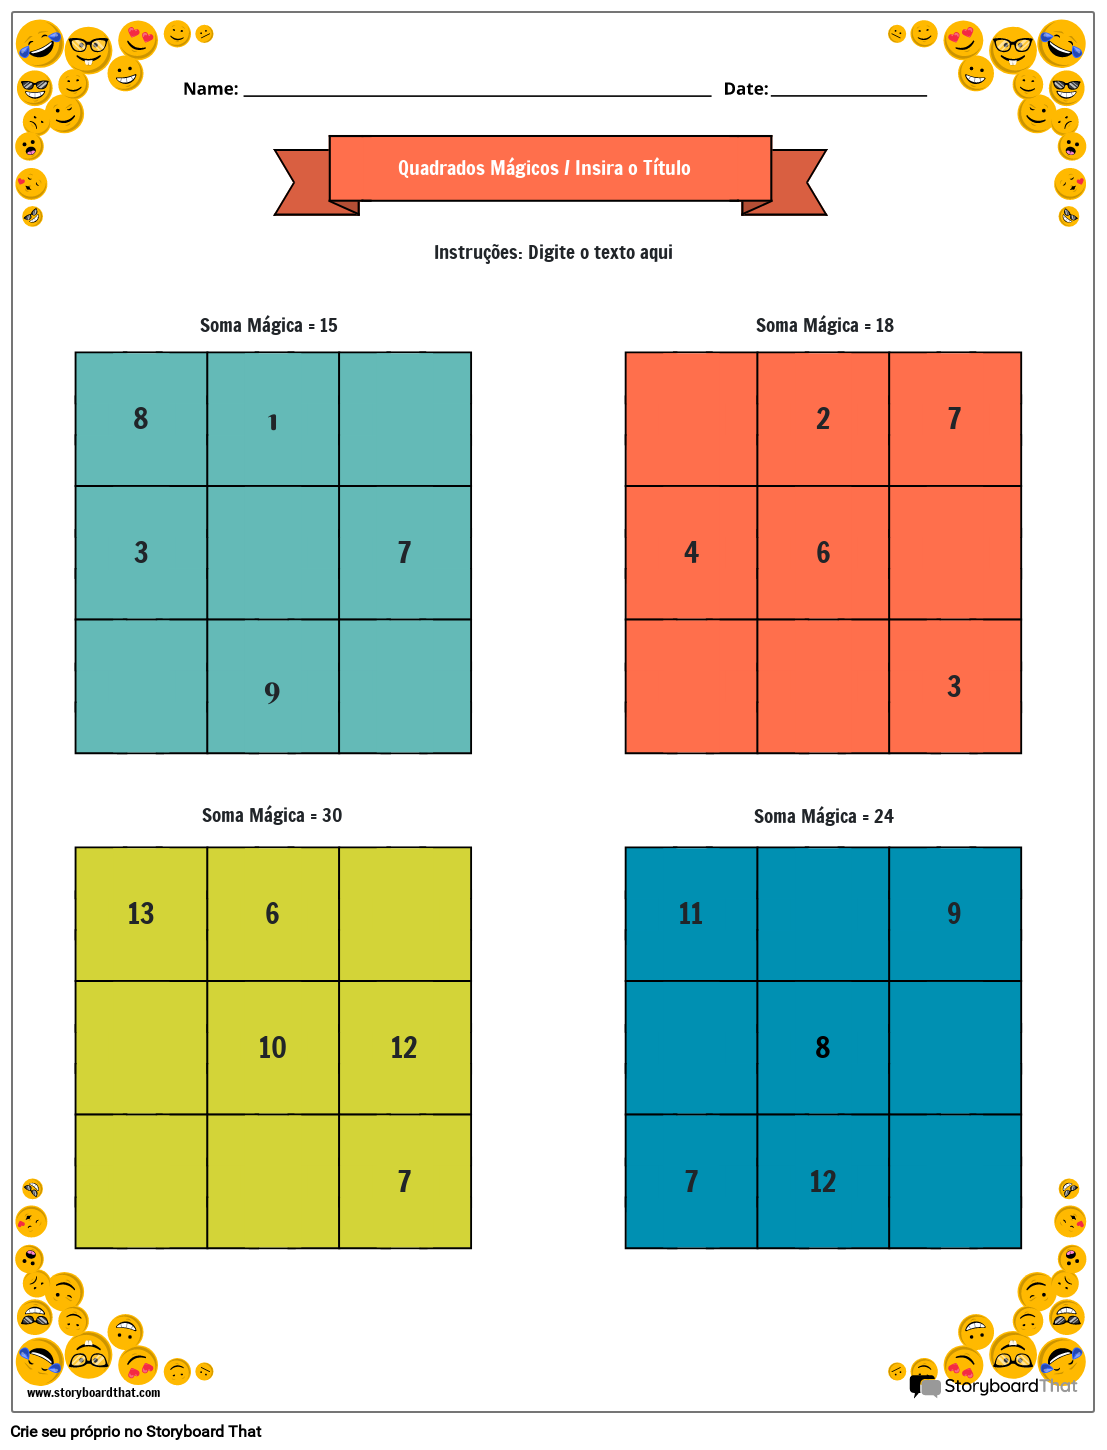 Planilha de quadrados mágicos 3x3 com borda de rosto sorridente